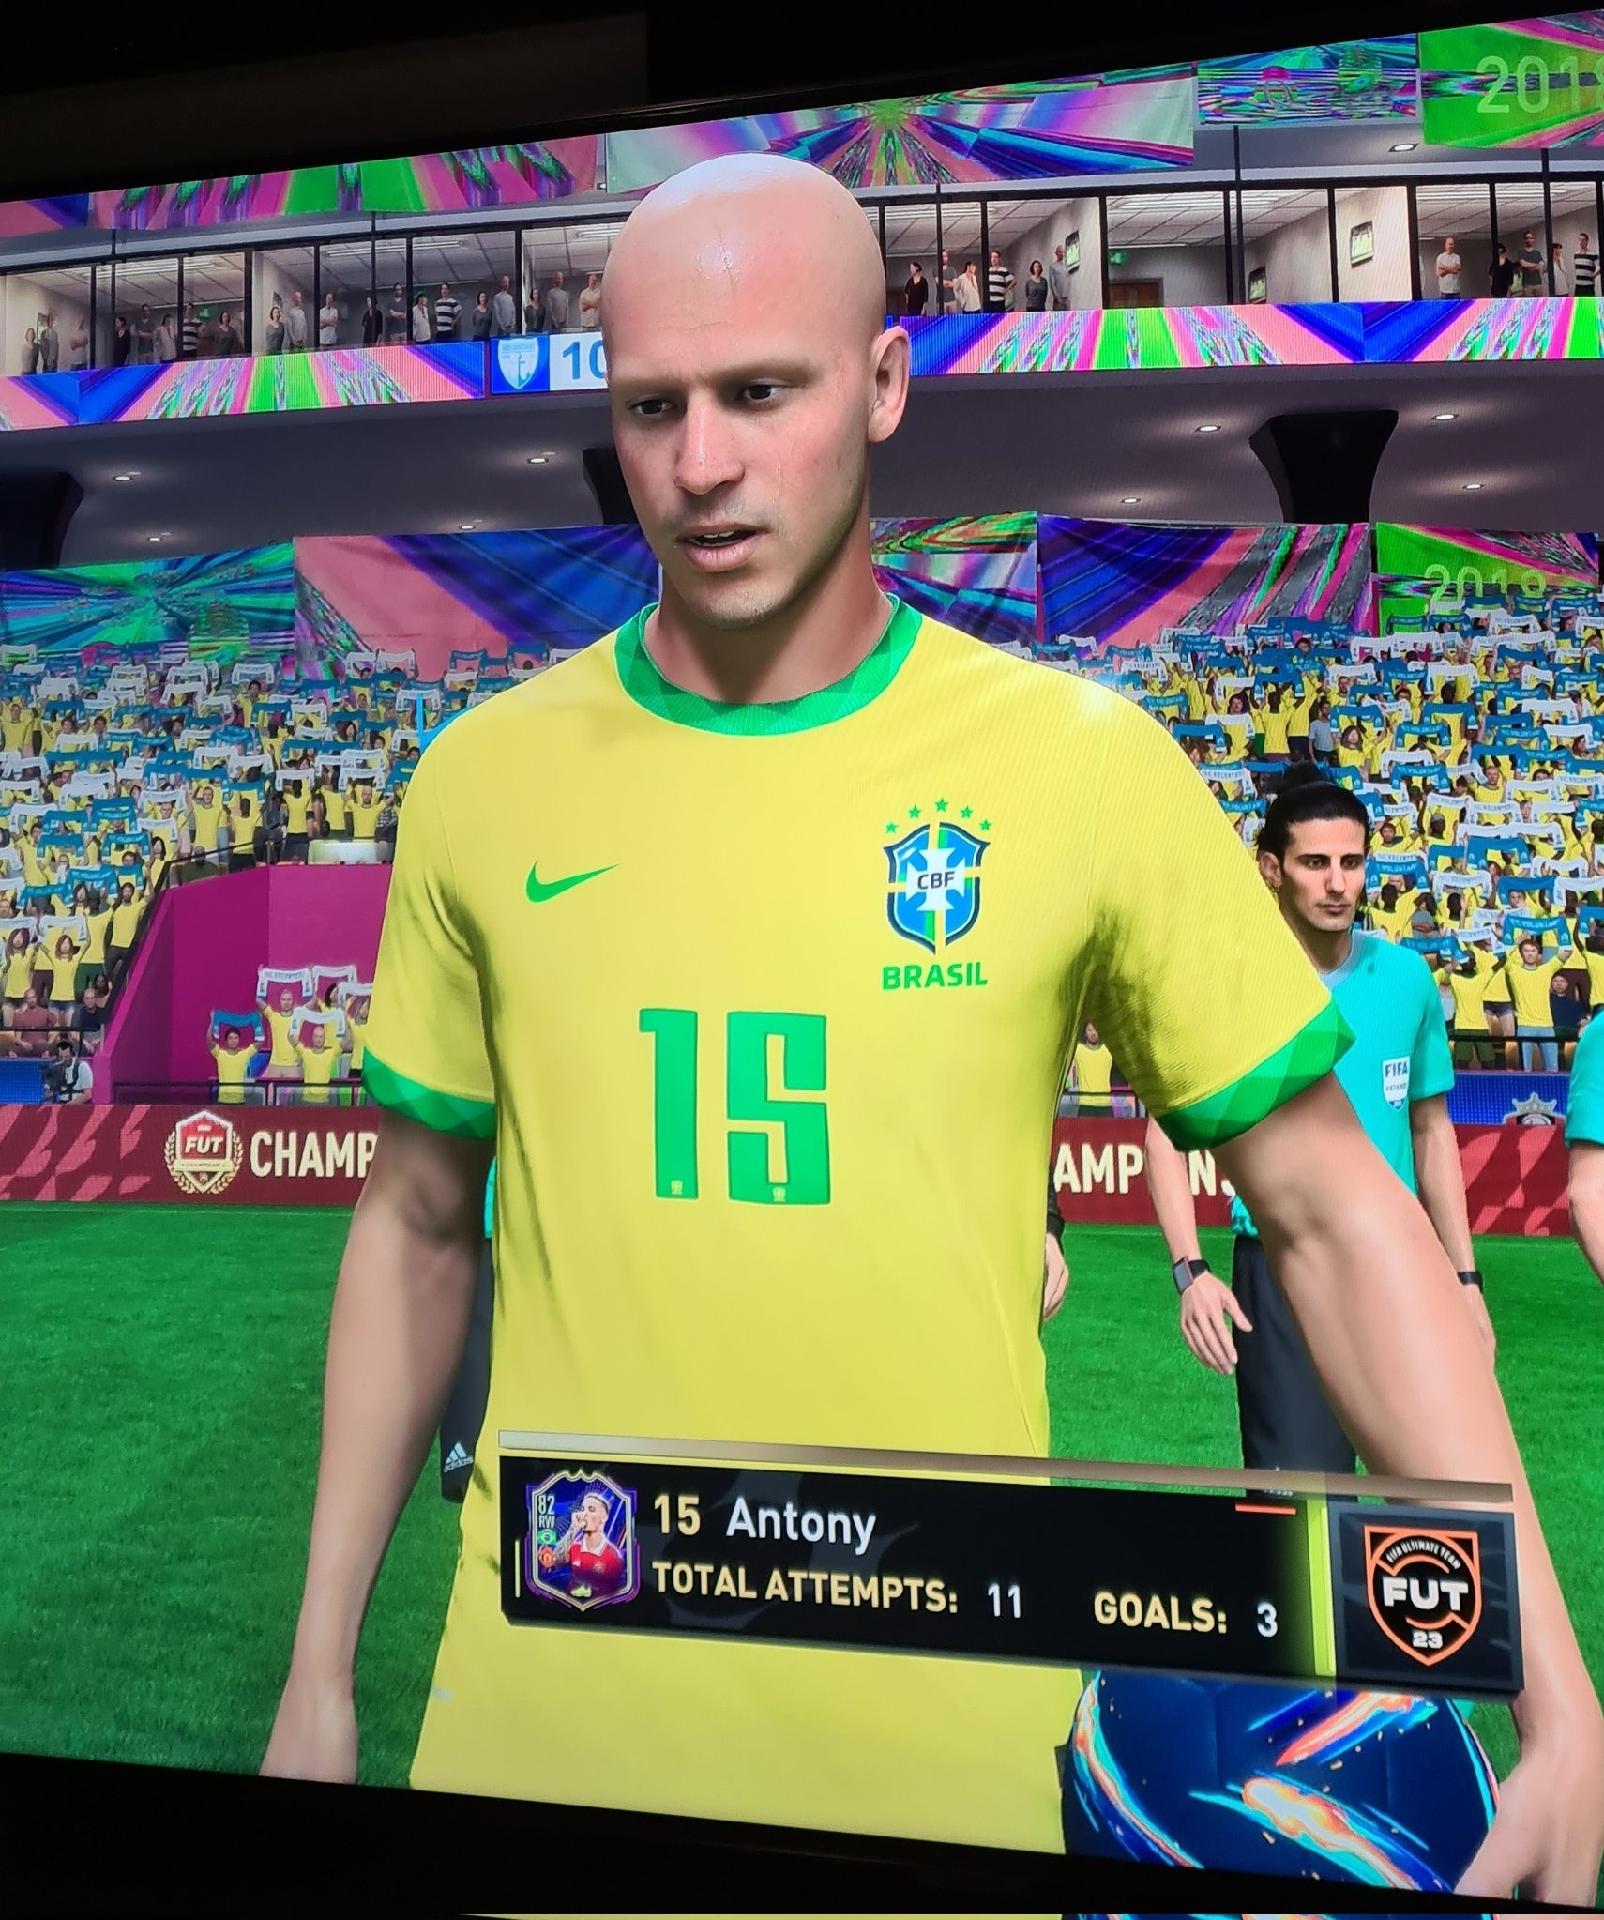 FIFA 23 : JOGADORES SUL AMERICANOS COM FACE REAL para o seu MODO CARREIRA 